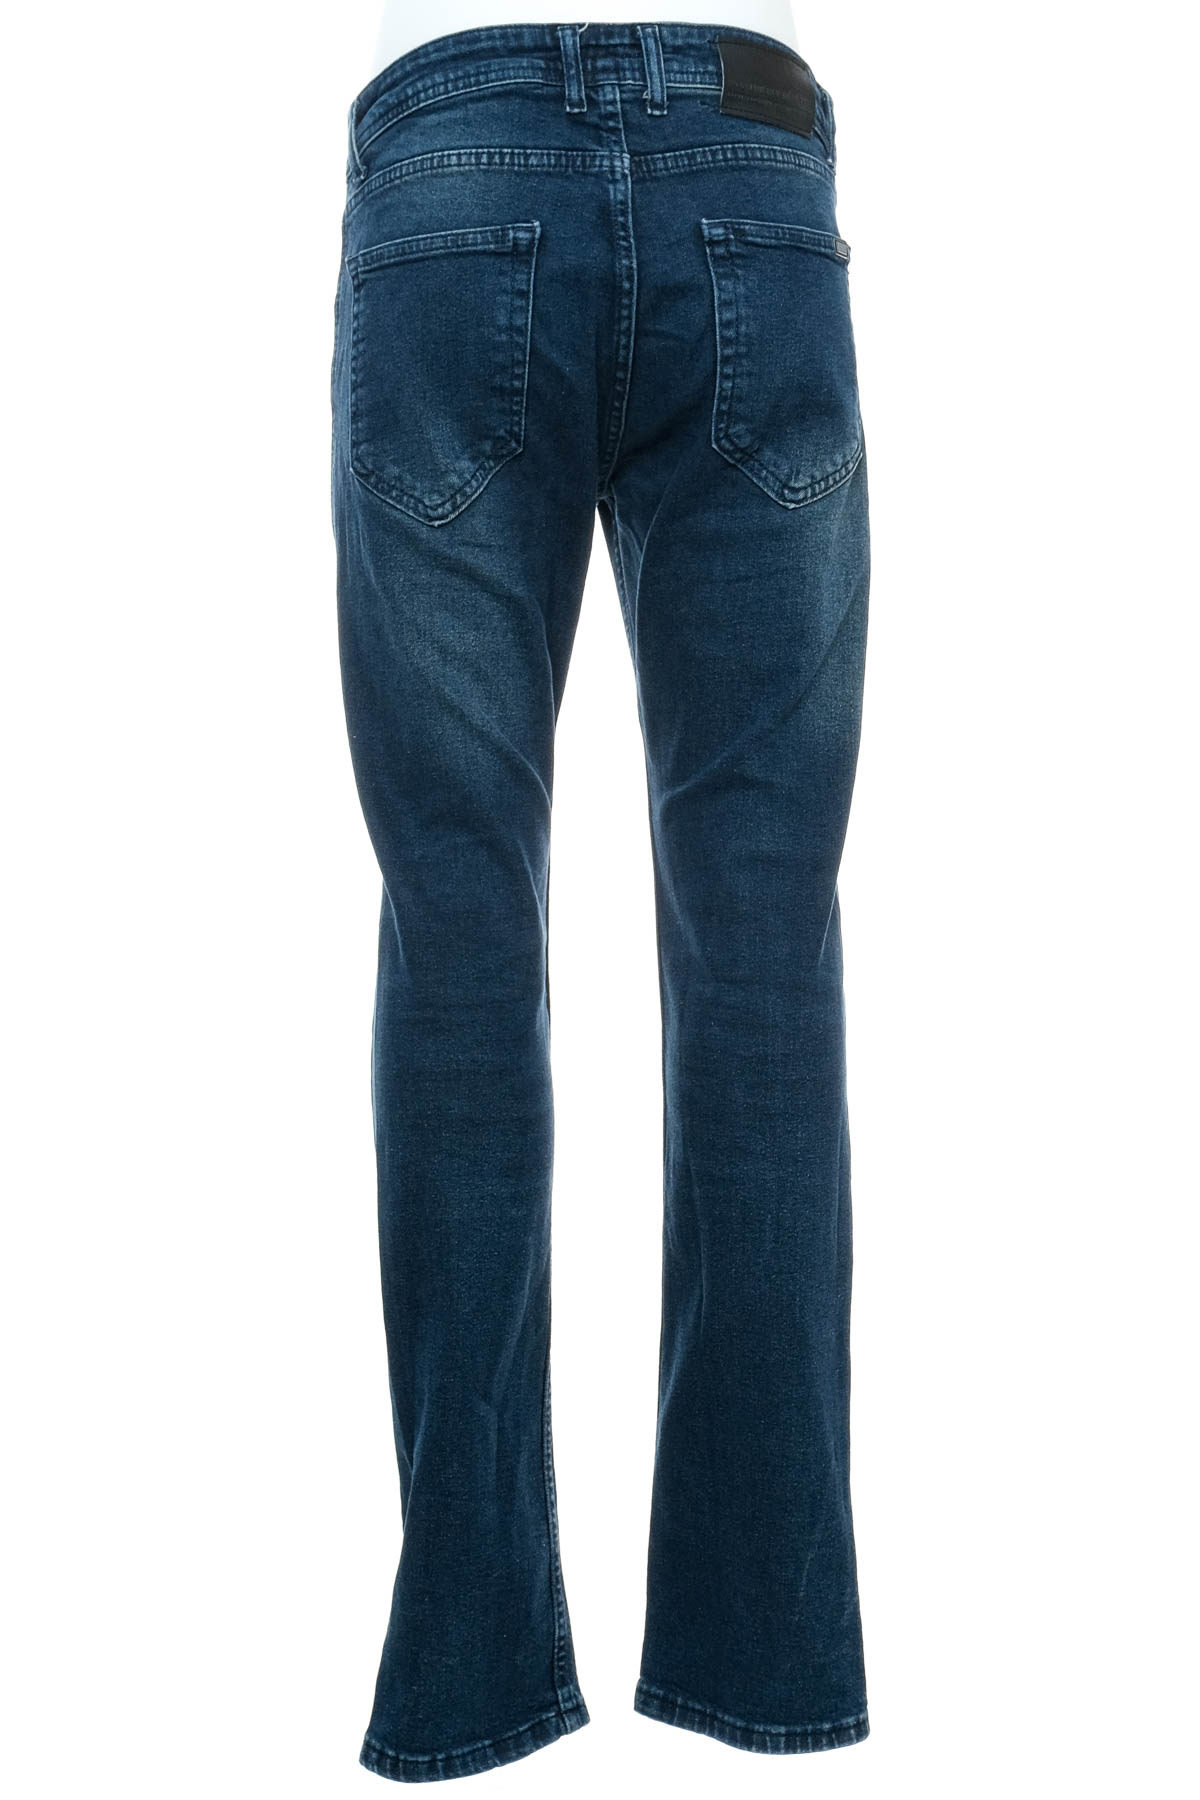 Men's jeans - Jack Kevin - 1